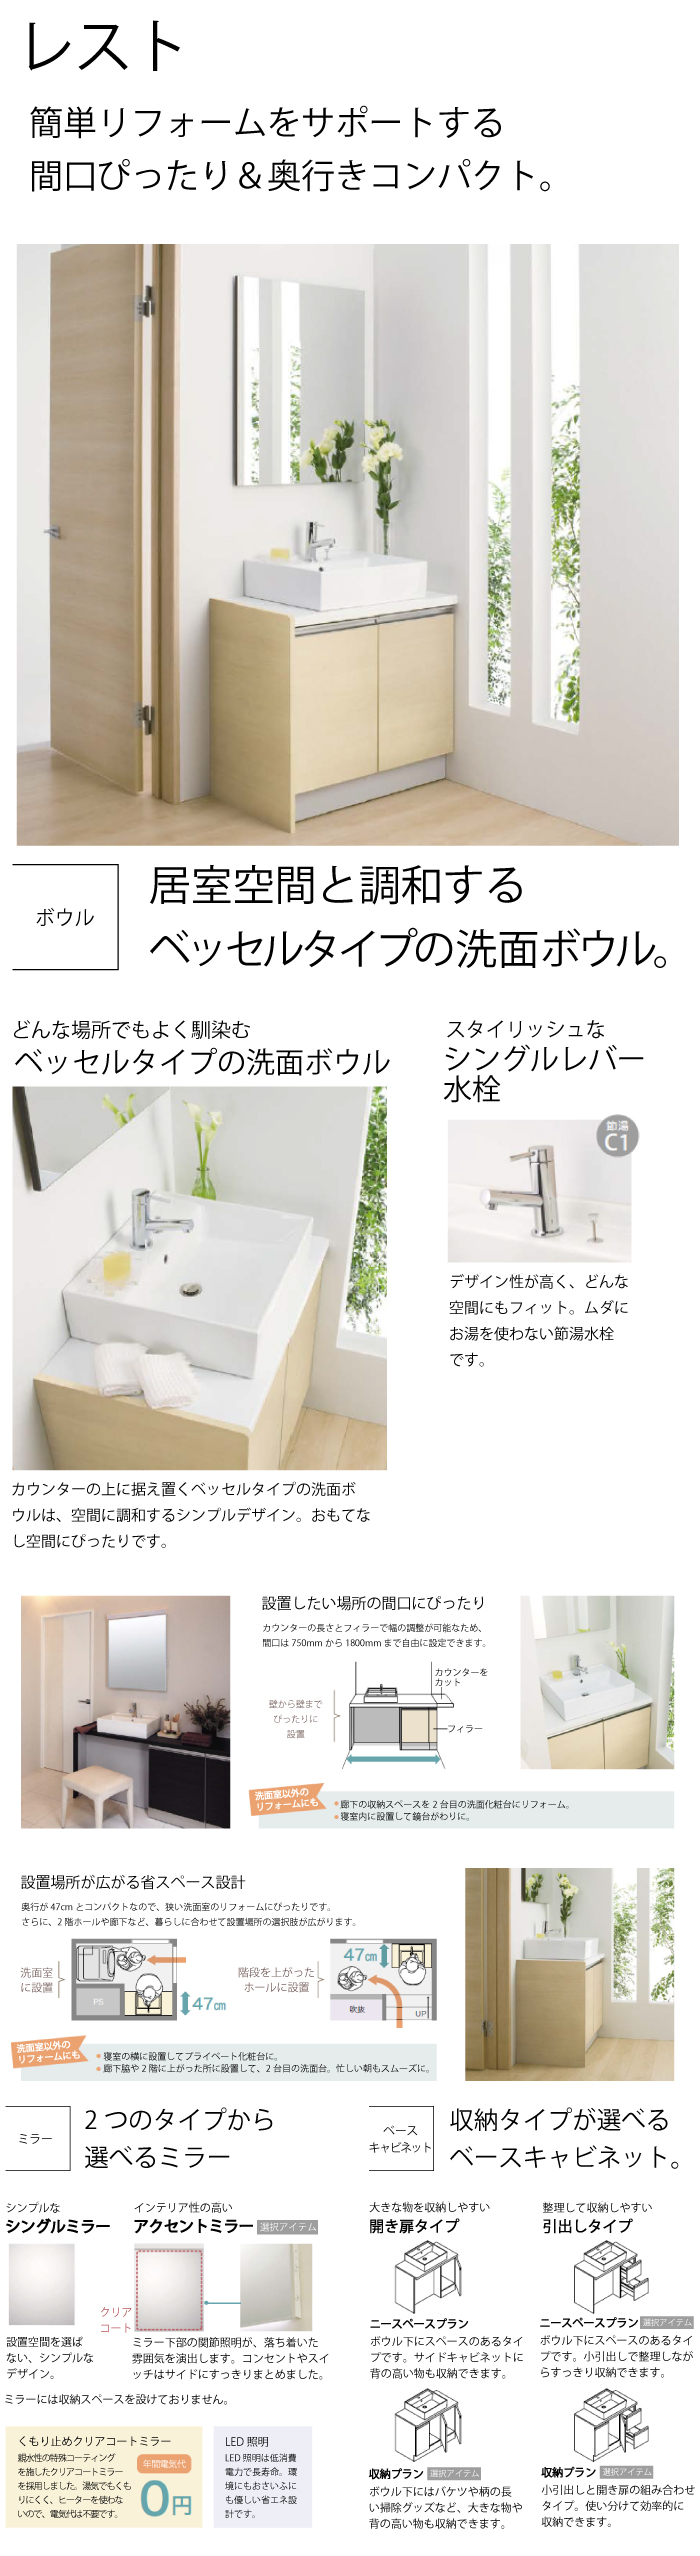 洗面化粧台 QVシリーズ ハウステック housetec [QVM-L750HM] 一面鏡・LED照明 幅750mm ヒーターなし ミラーのみ  浴室、浴槽、洗面所